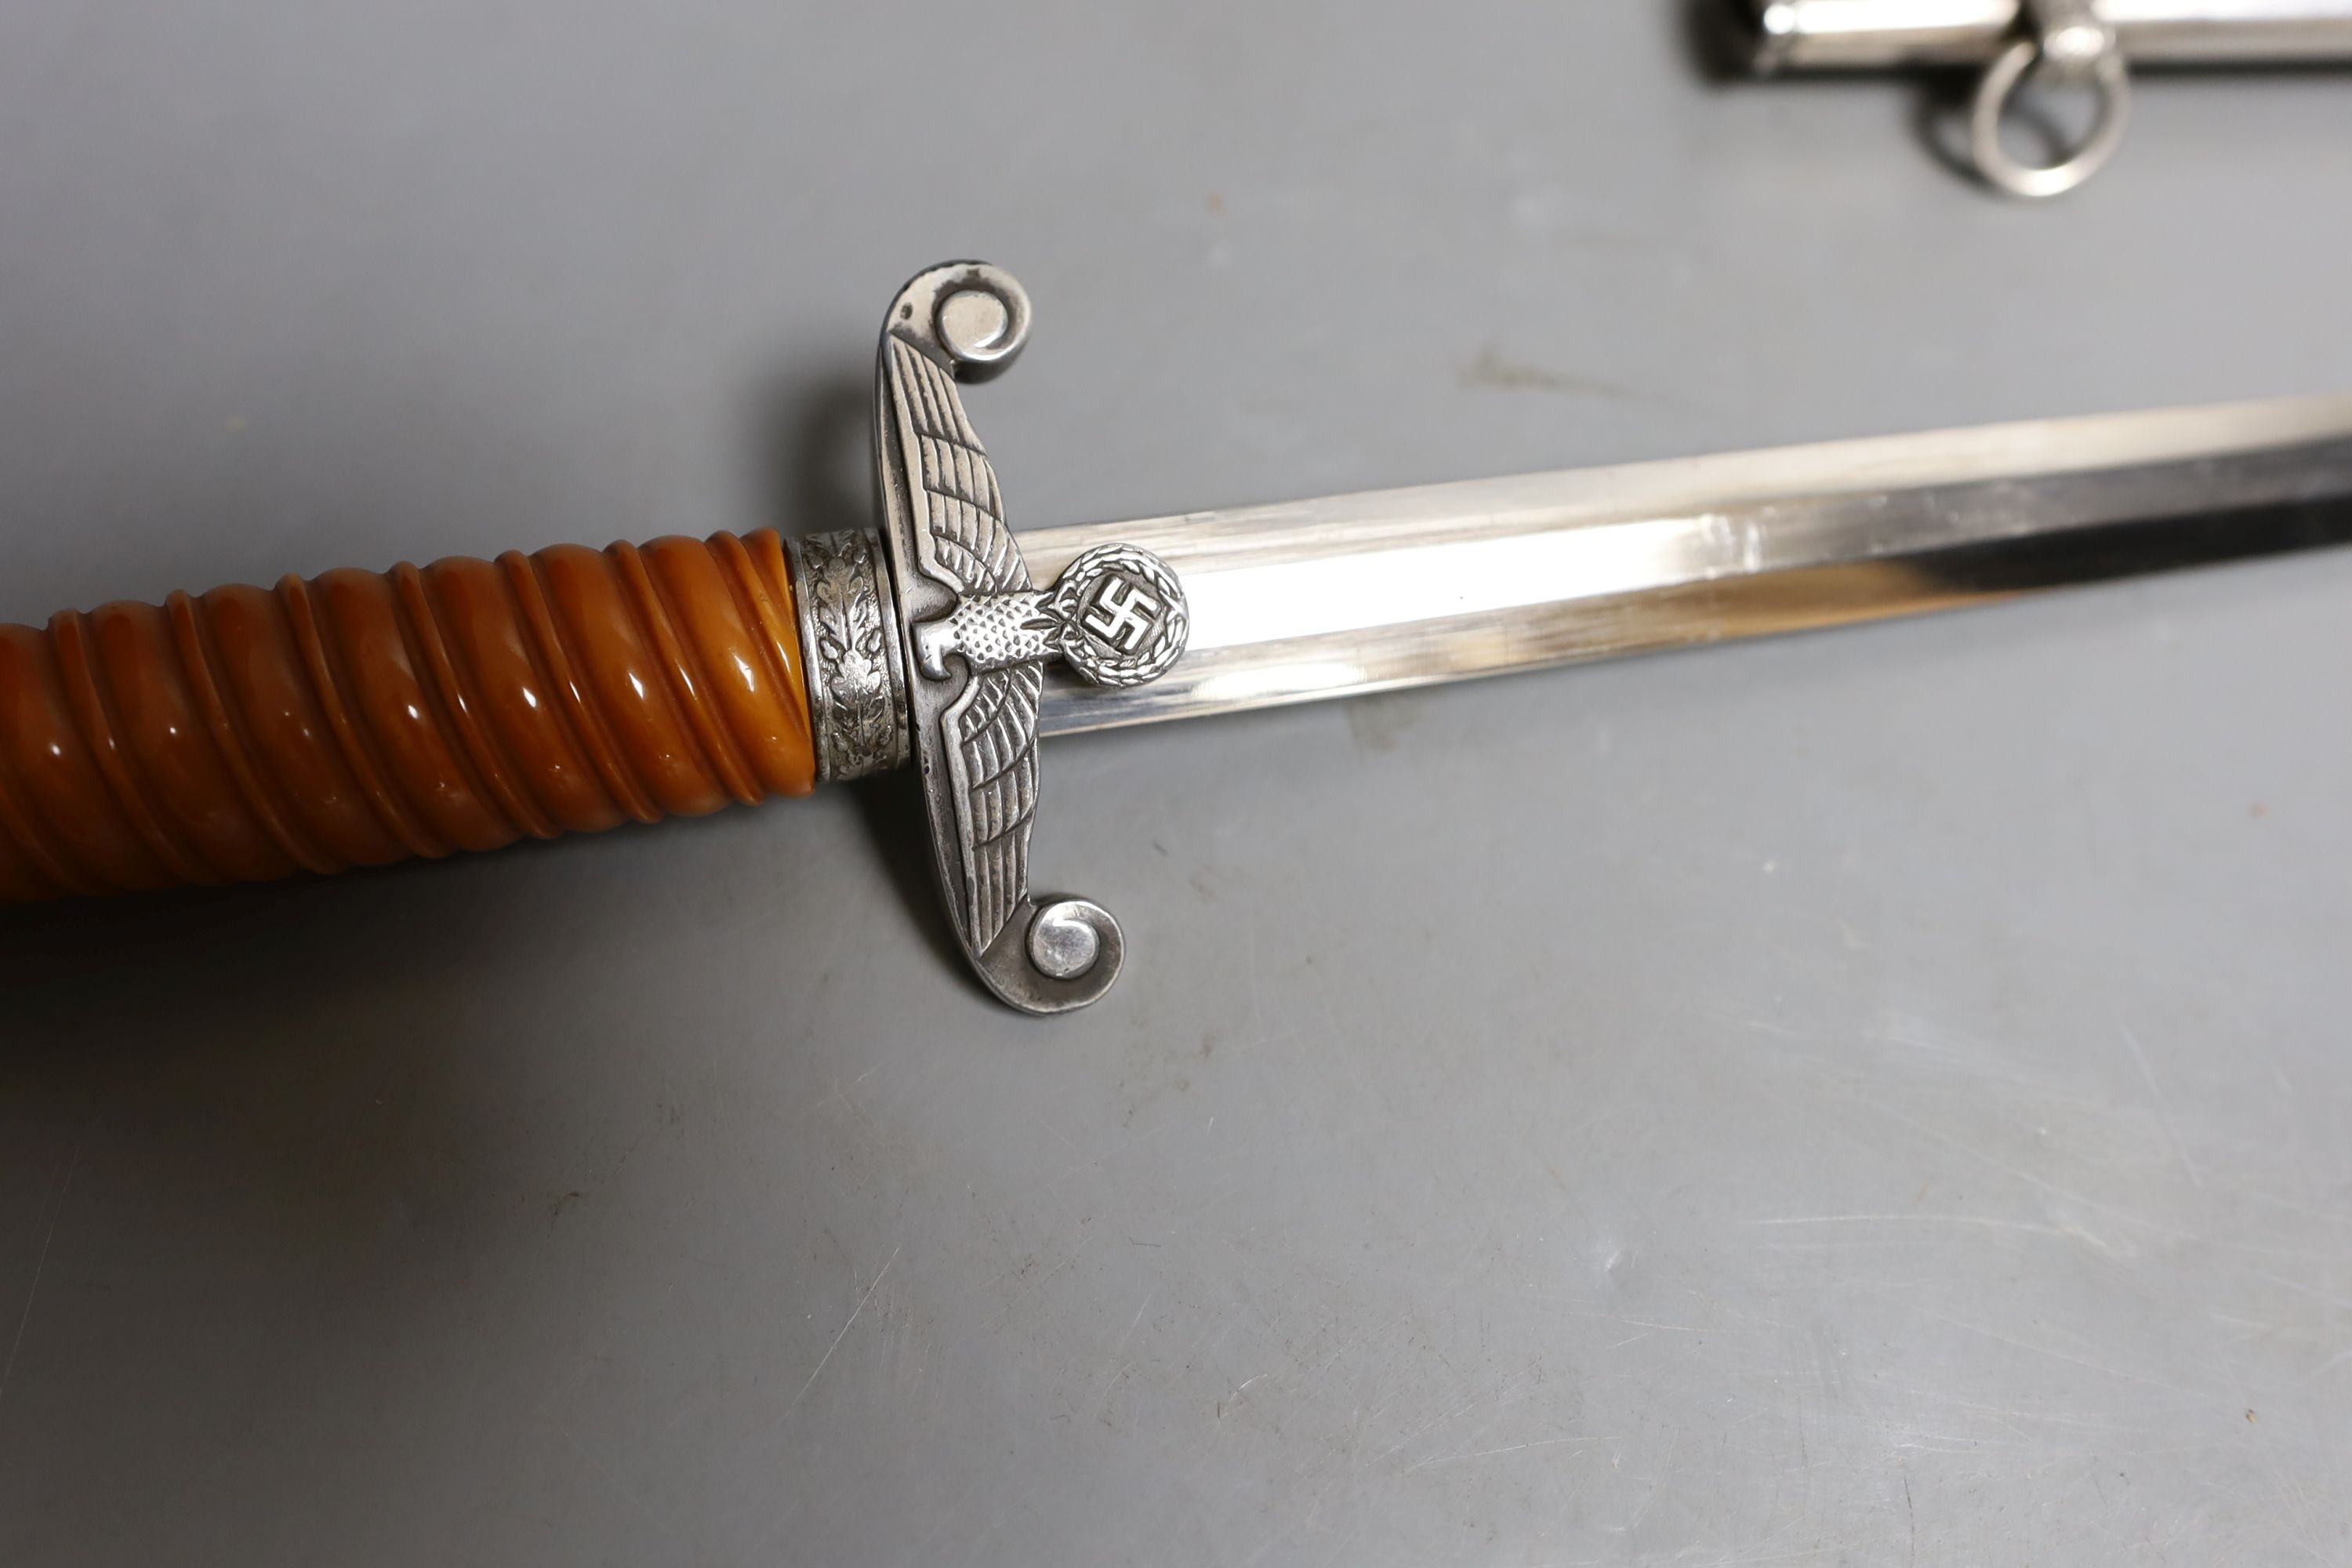 An original German navy officer's dagger, no maker, 40 cms long.